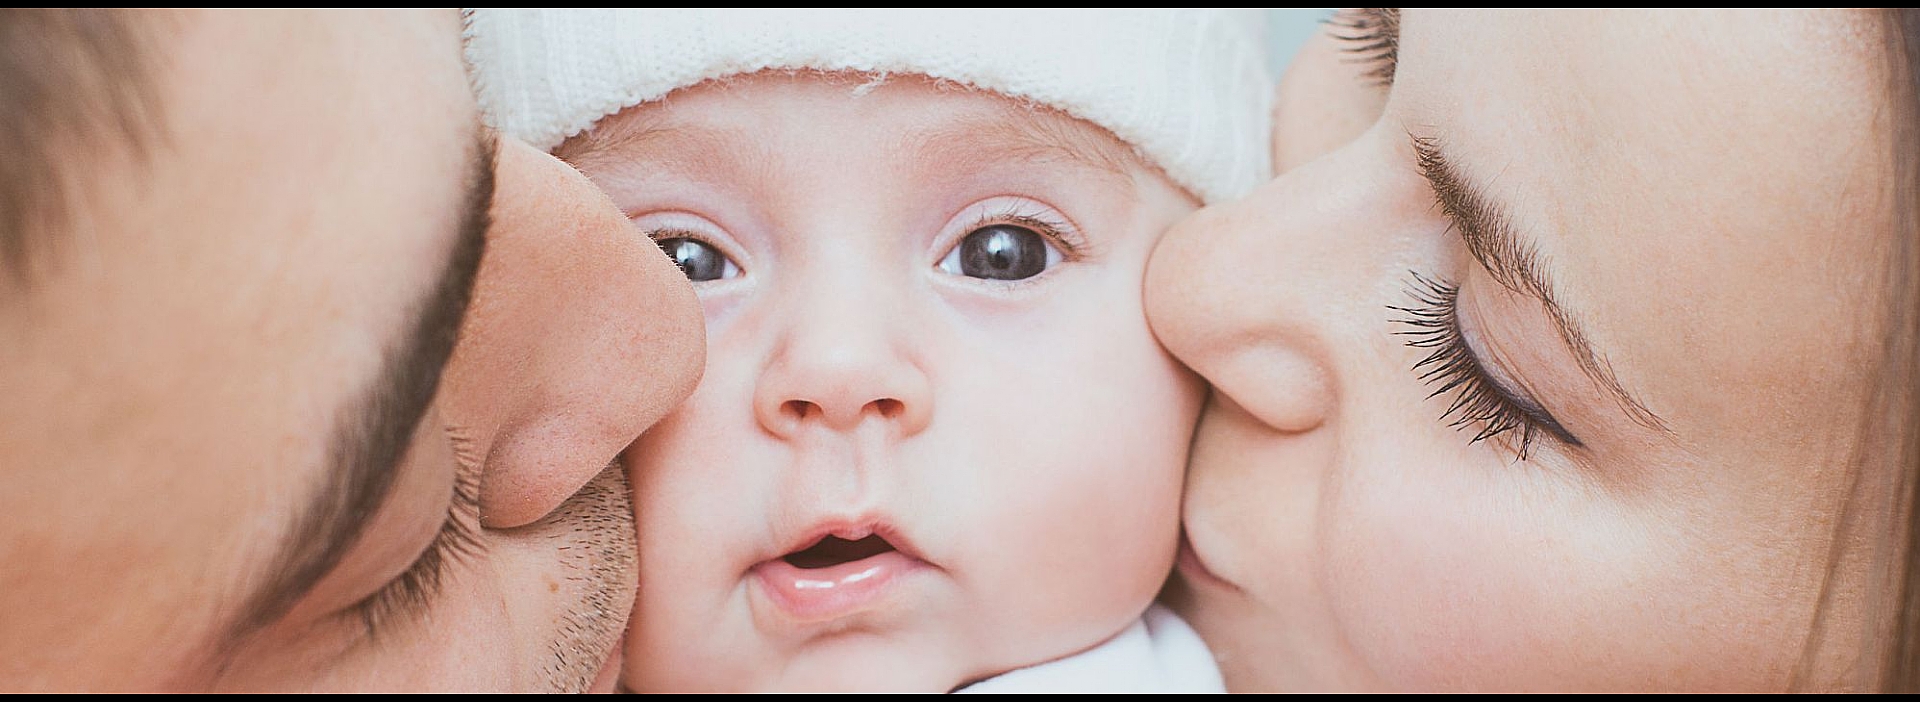 Developmental Delays in Infants